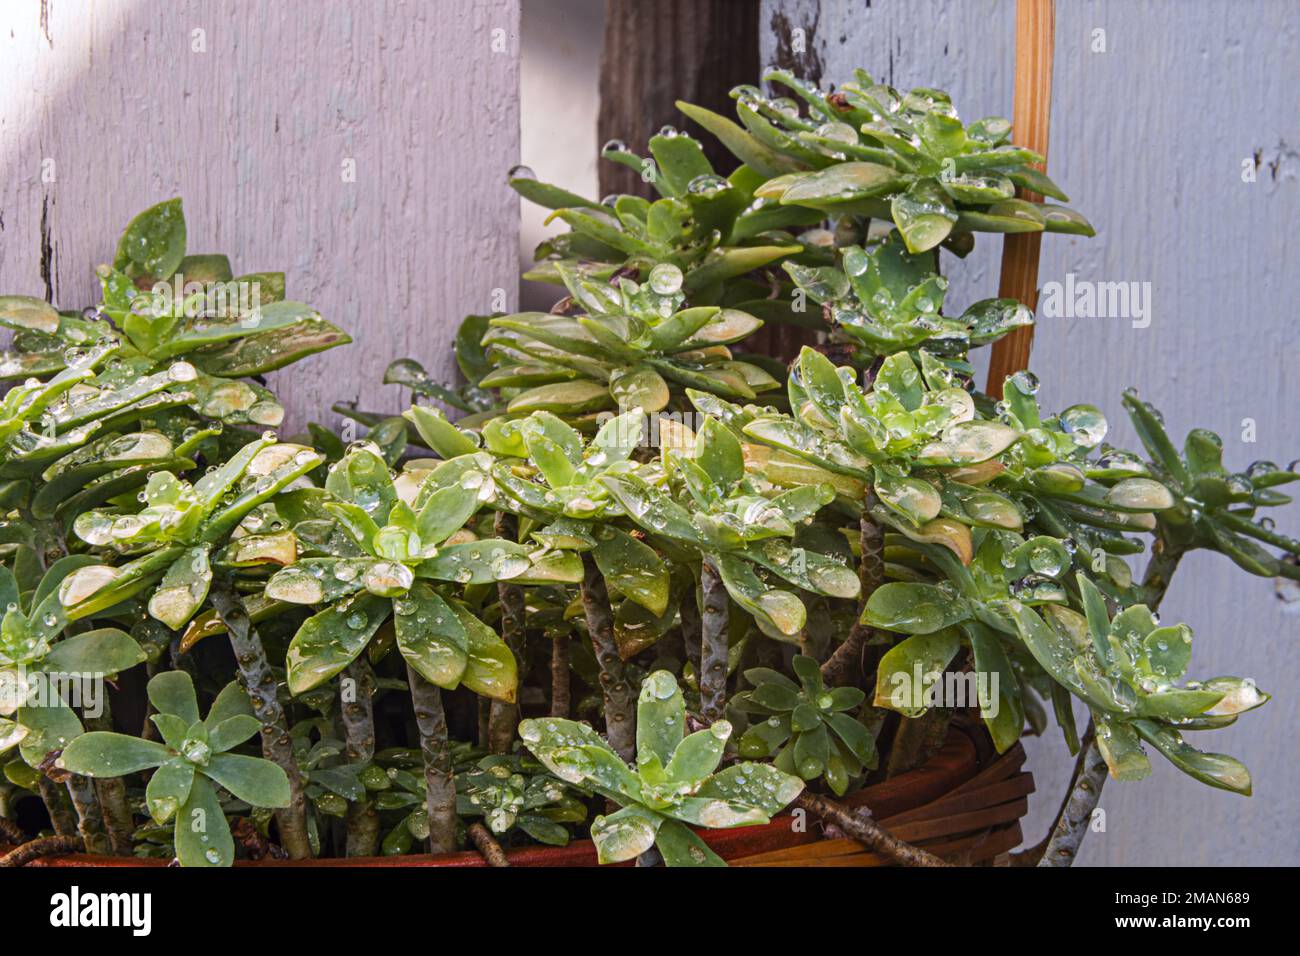 Une plante succulente dans un panier en osier avec des feuilles pleines de gouttes de pluie Banque D'Images